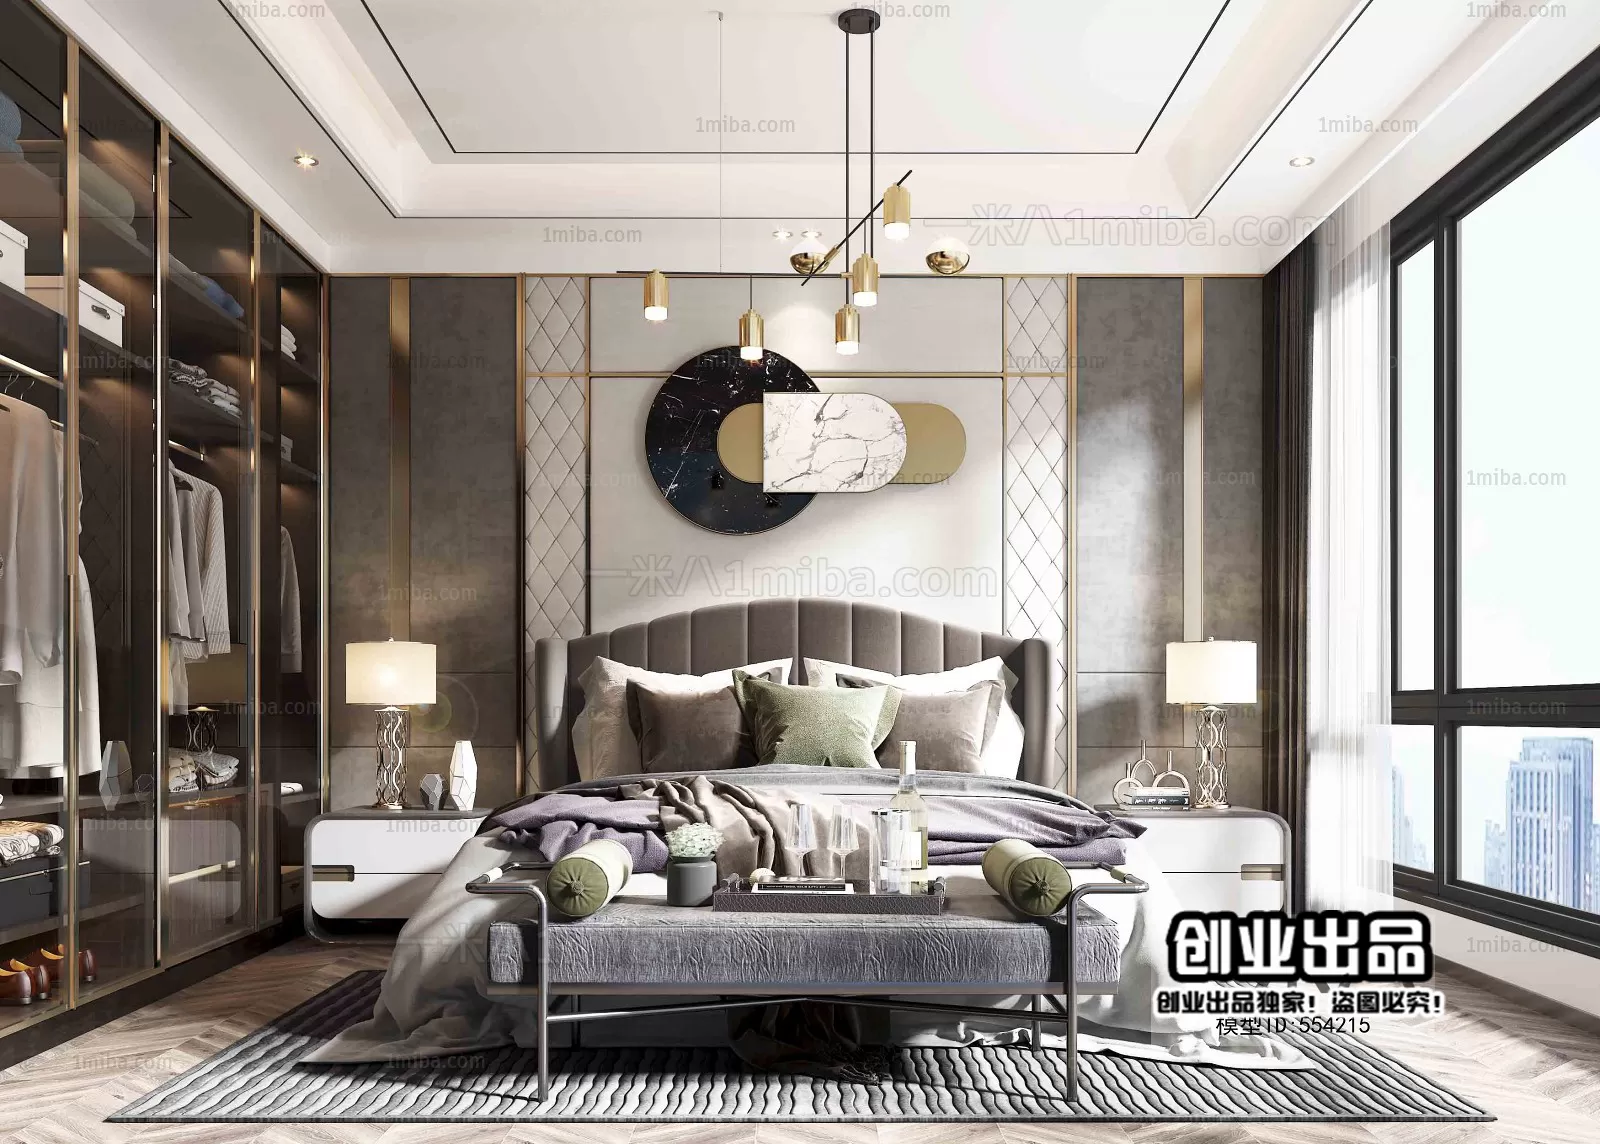 Bedroom – Modern Interior Design – 3D Models – 145